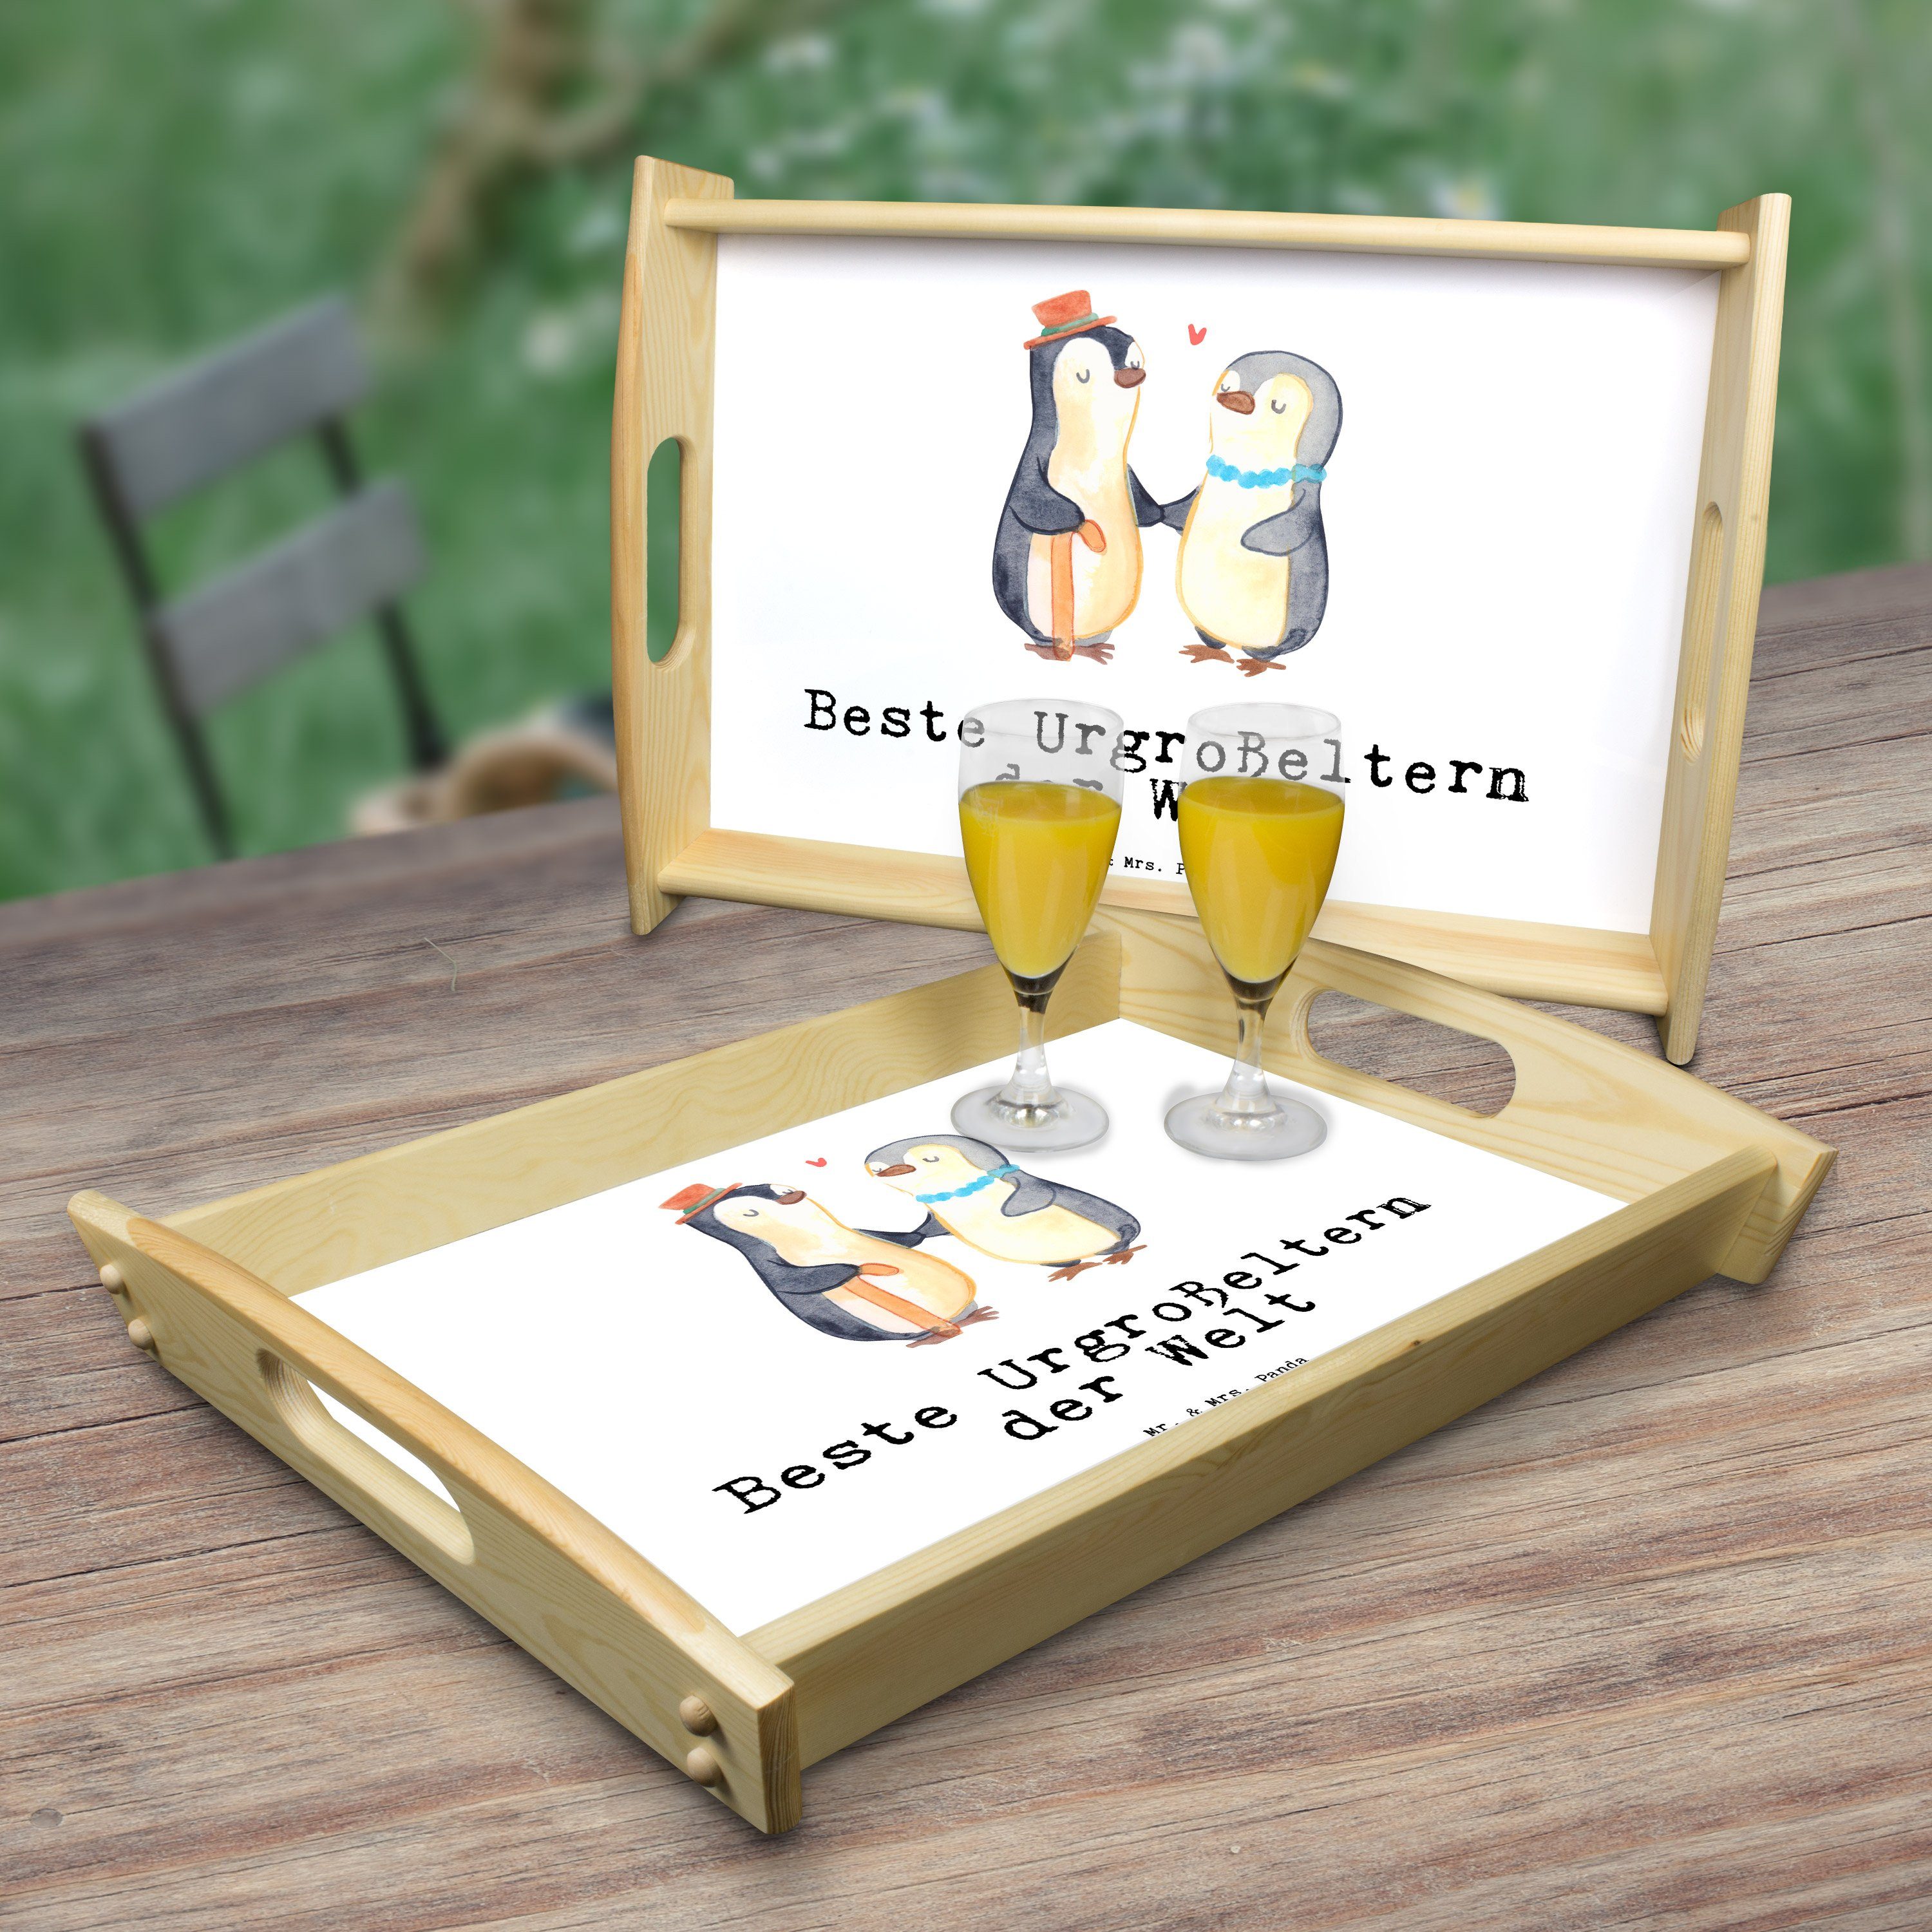 Mr. & Echtholz Weiß lasiert, Mrs. Schenken, der Tablett Welt Geschenk, - - Urgroßeltern Beste Pinguin (1-tlg) Panda Küch